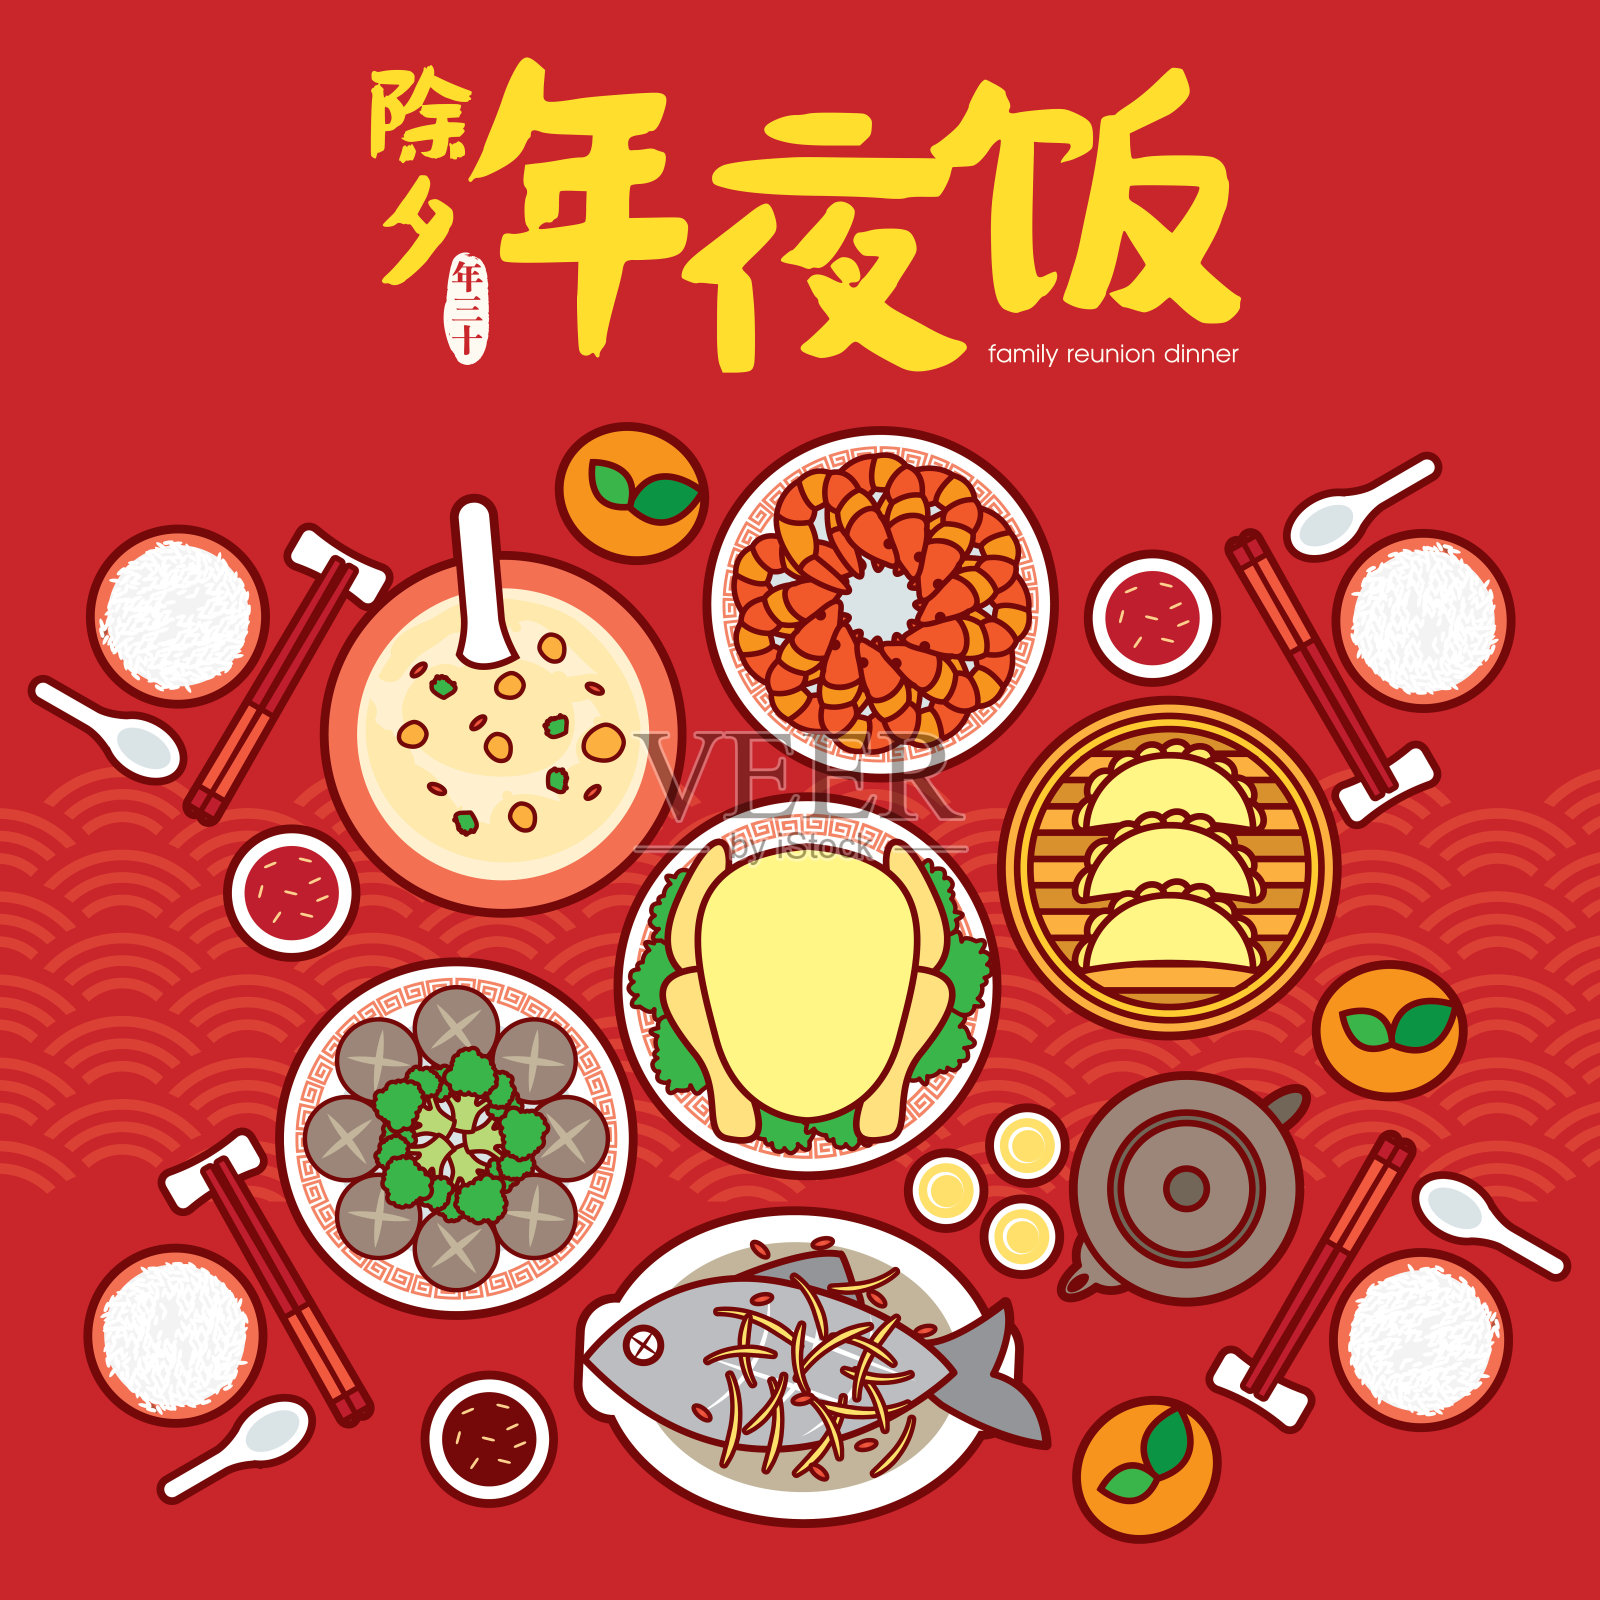 中国除夕团圆饭矢量插图与传统的美味菜肴。(翻译:除夕、团圆饭)设计模板素材